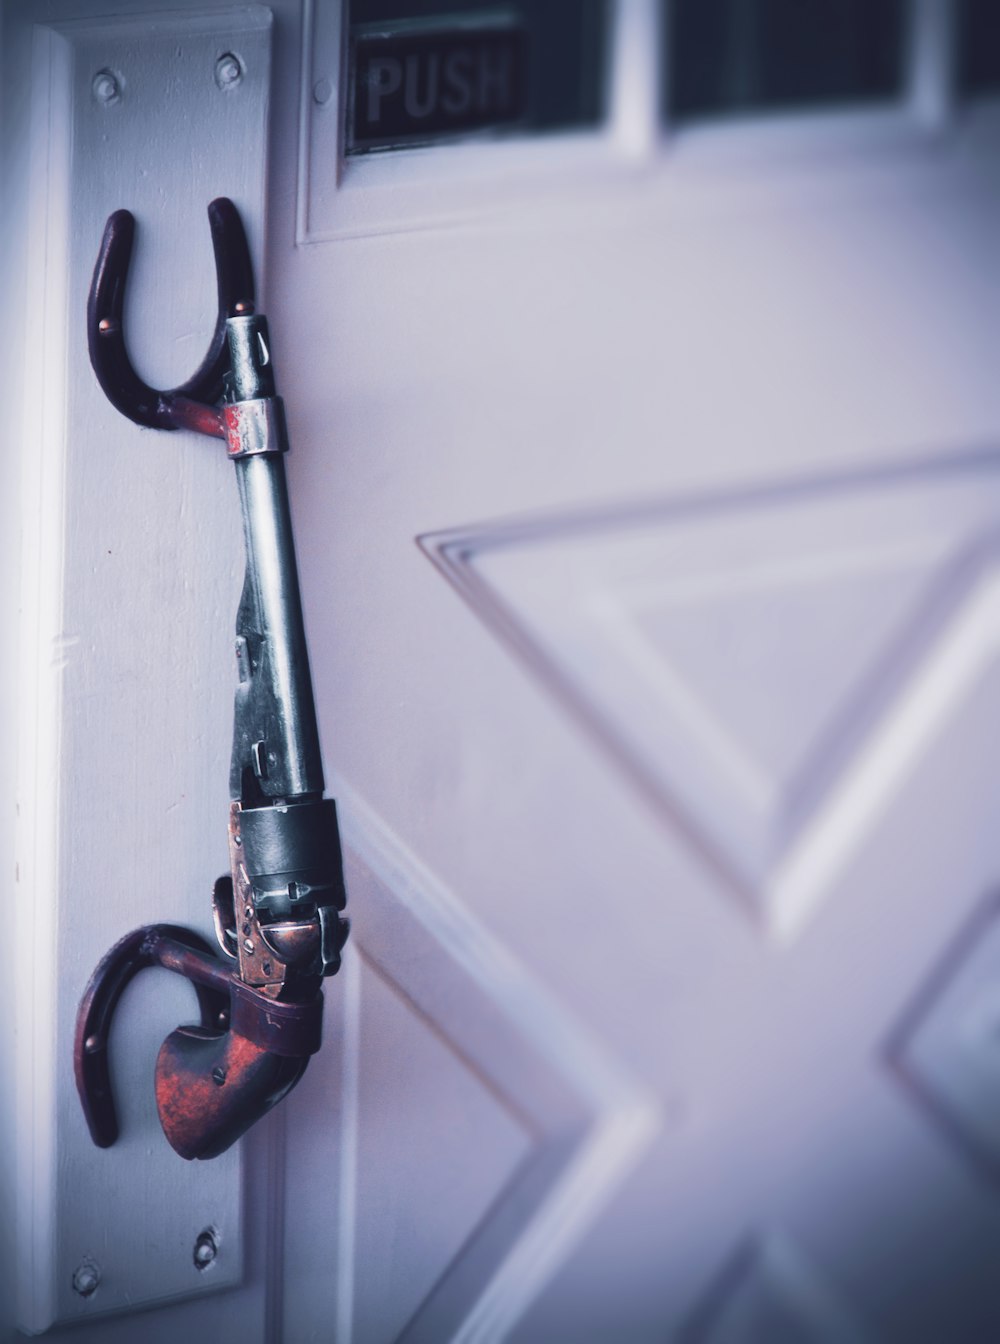 a pair of scissors hanging on a door handle